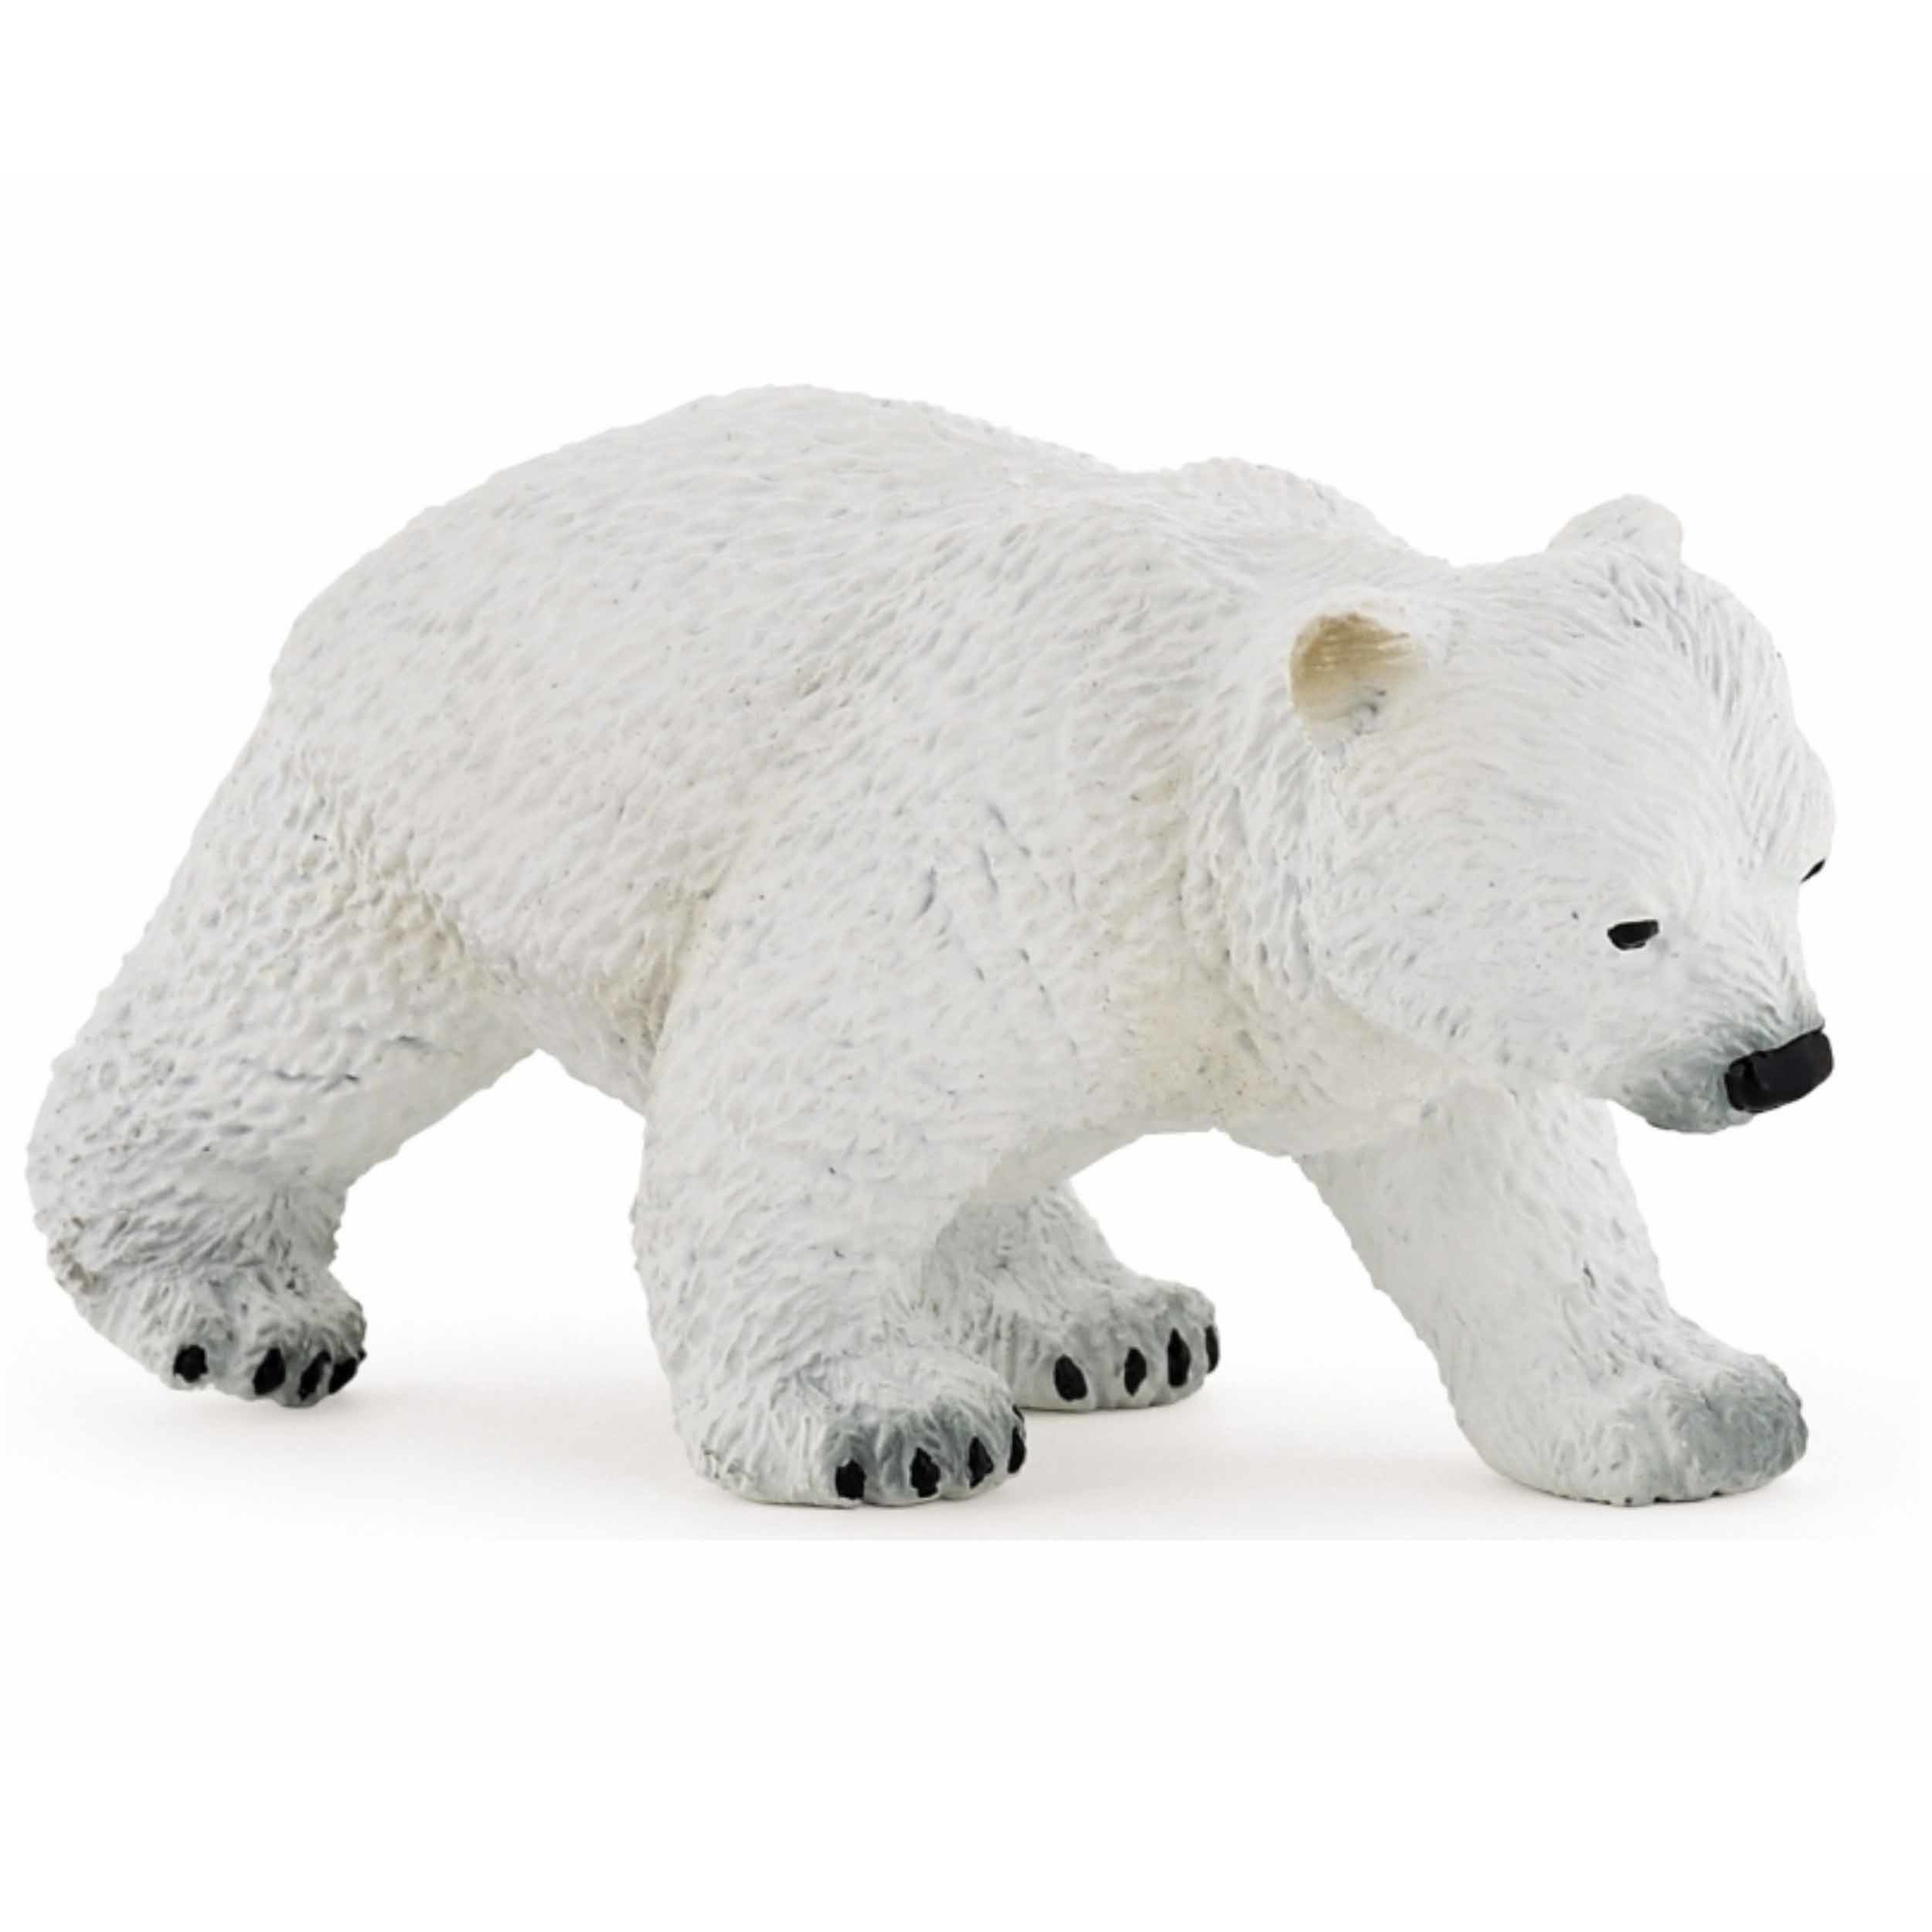 Plastic speelgoed figuur lopend ijsbeer welpje 8 cm